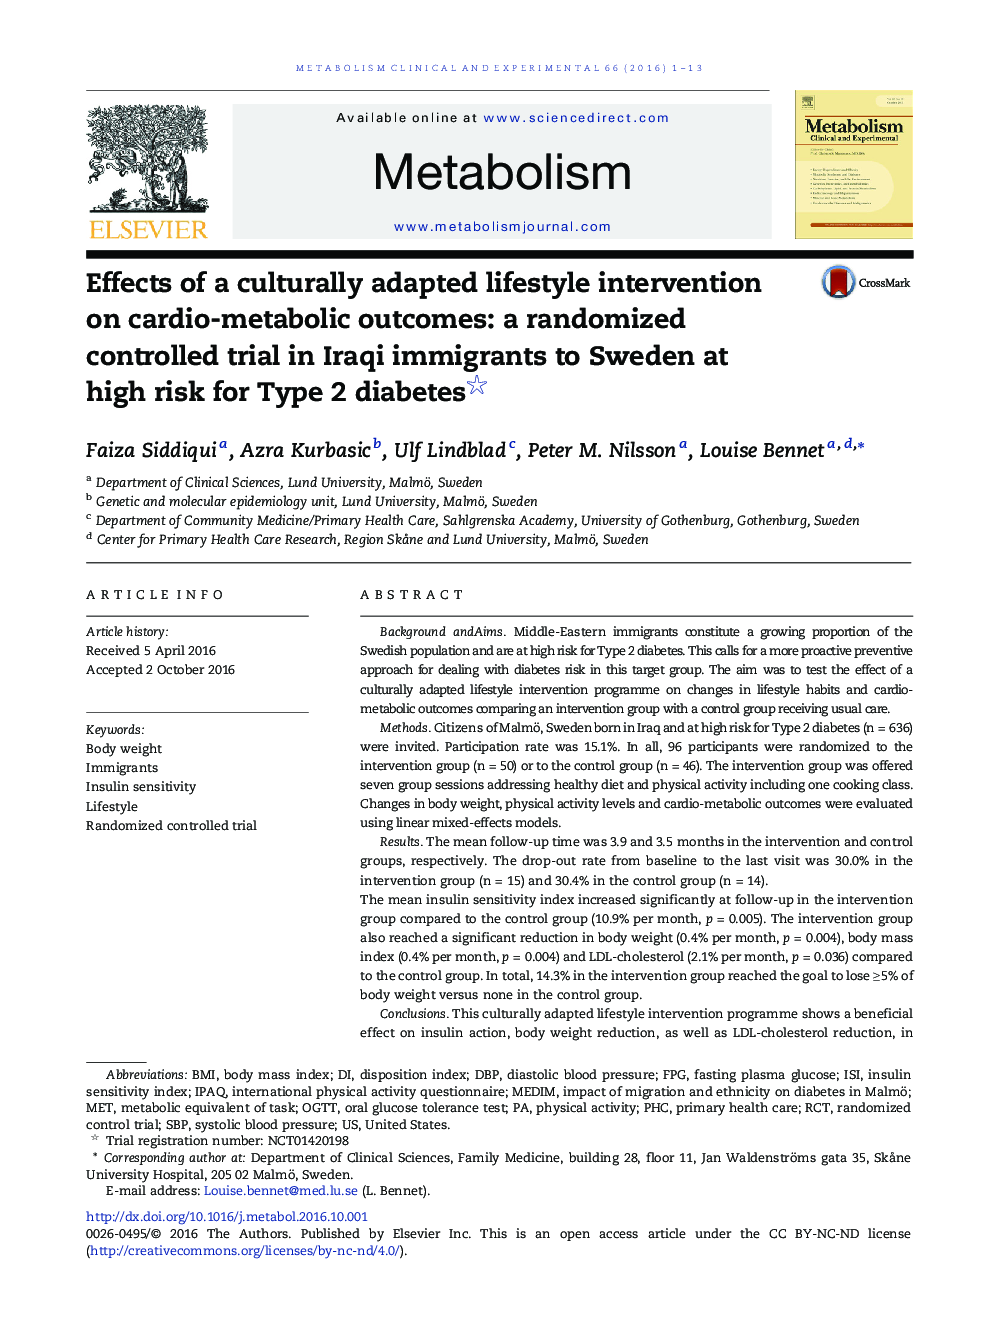 تأثیر یک مداخله شیوه زندگی مصنوعی سازگار با فرهنگ بر نتایج قلب و متابولیسم: یک آزمایش تصادفی کنترل شده در مهاجران عراقی به سوئد در معرض خطر بالای دیابت نوع 2 